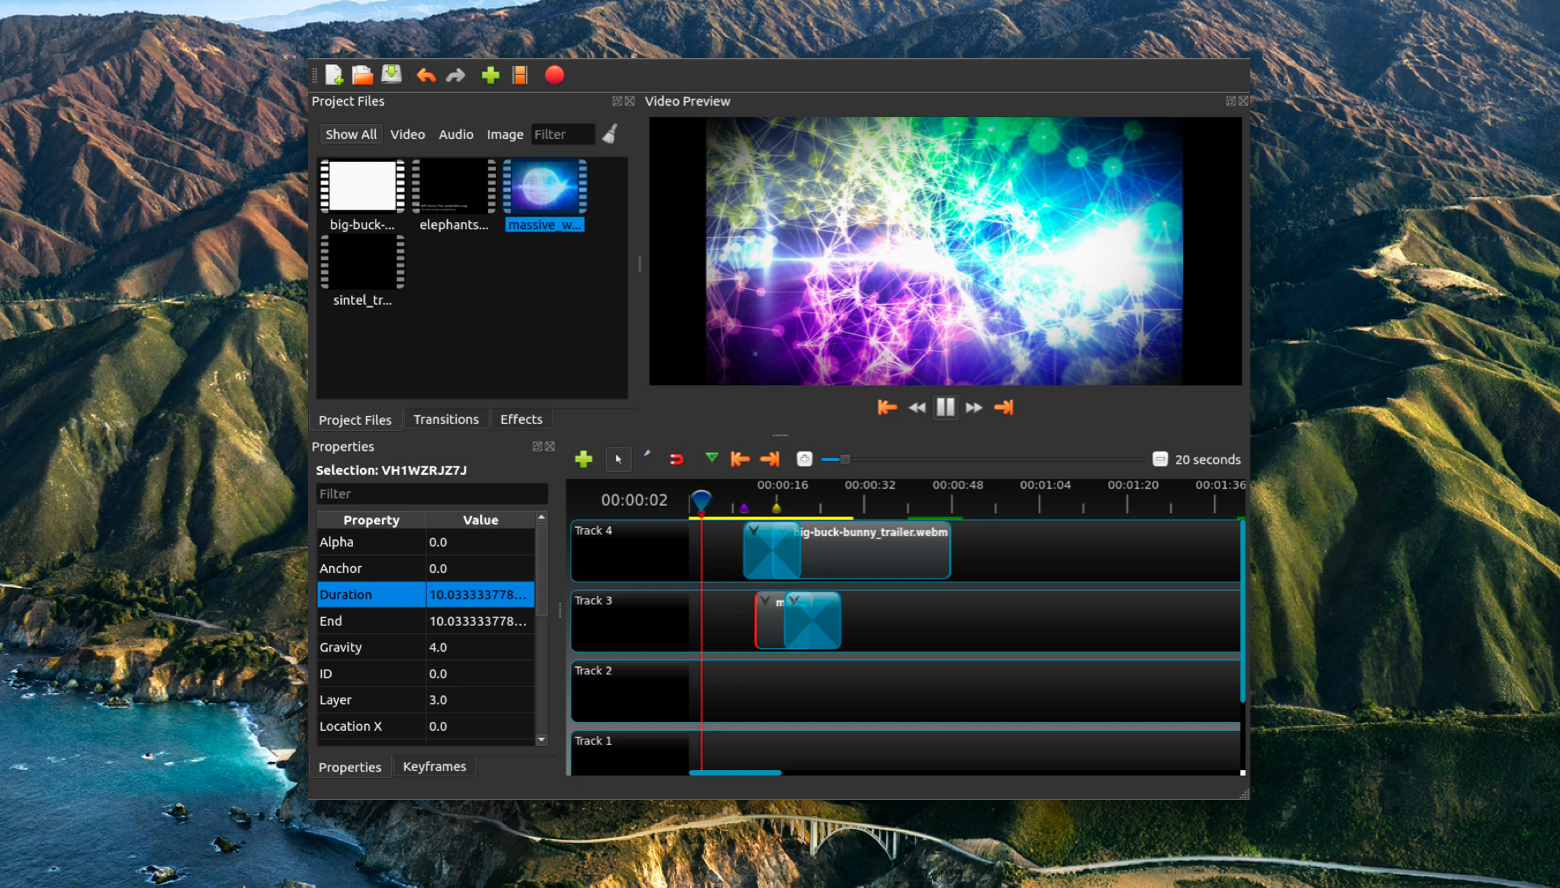 openshot video editing software